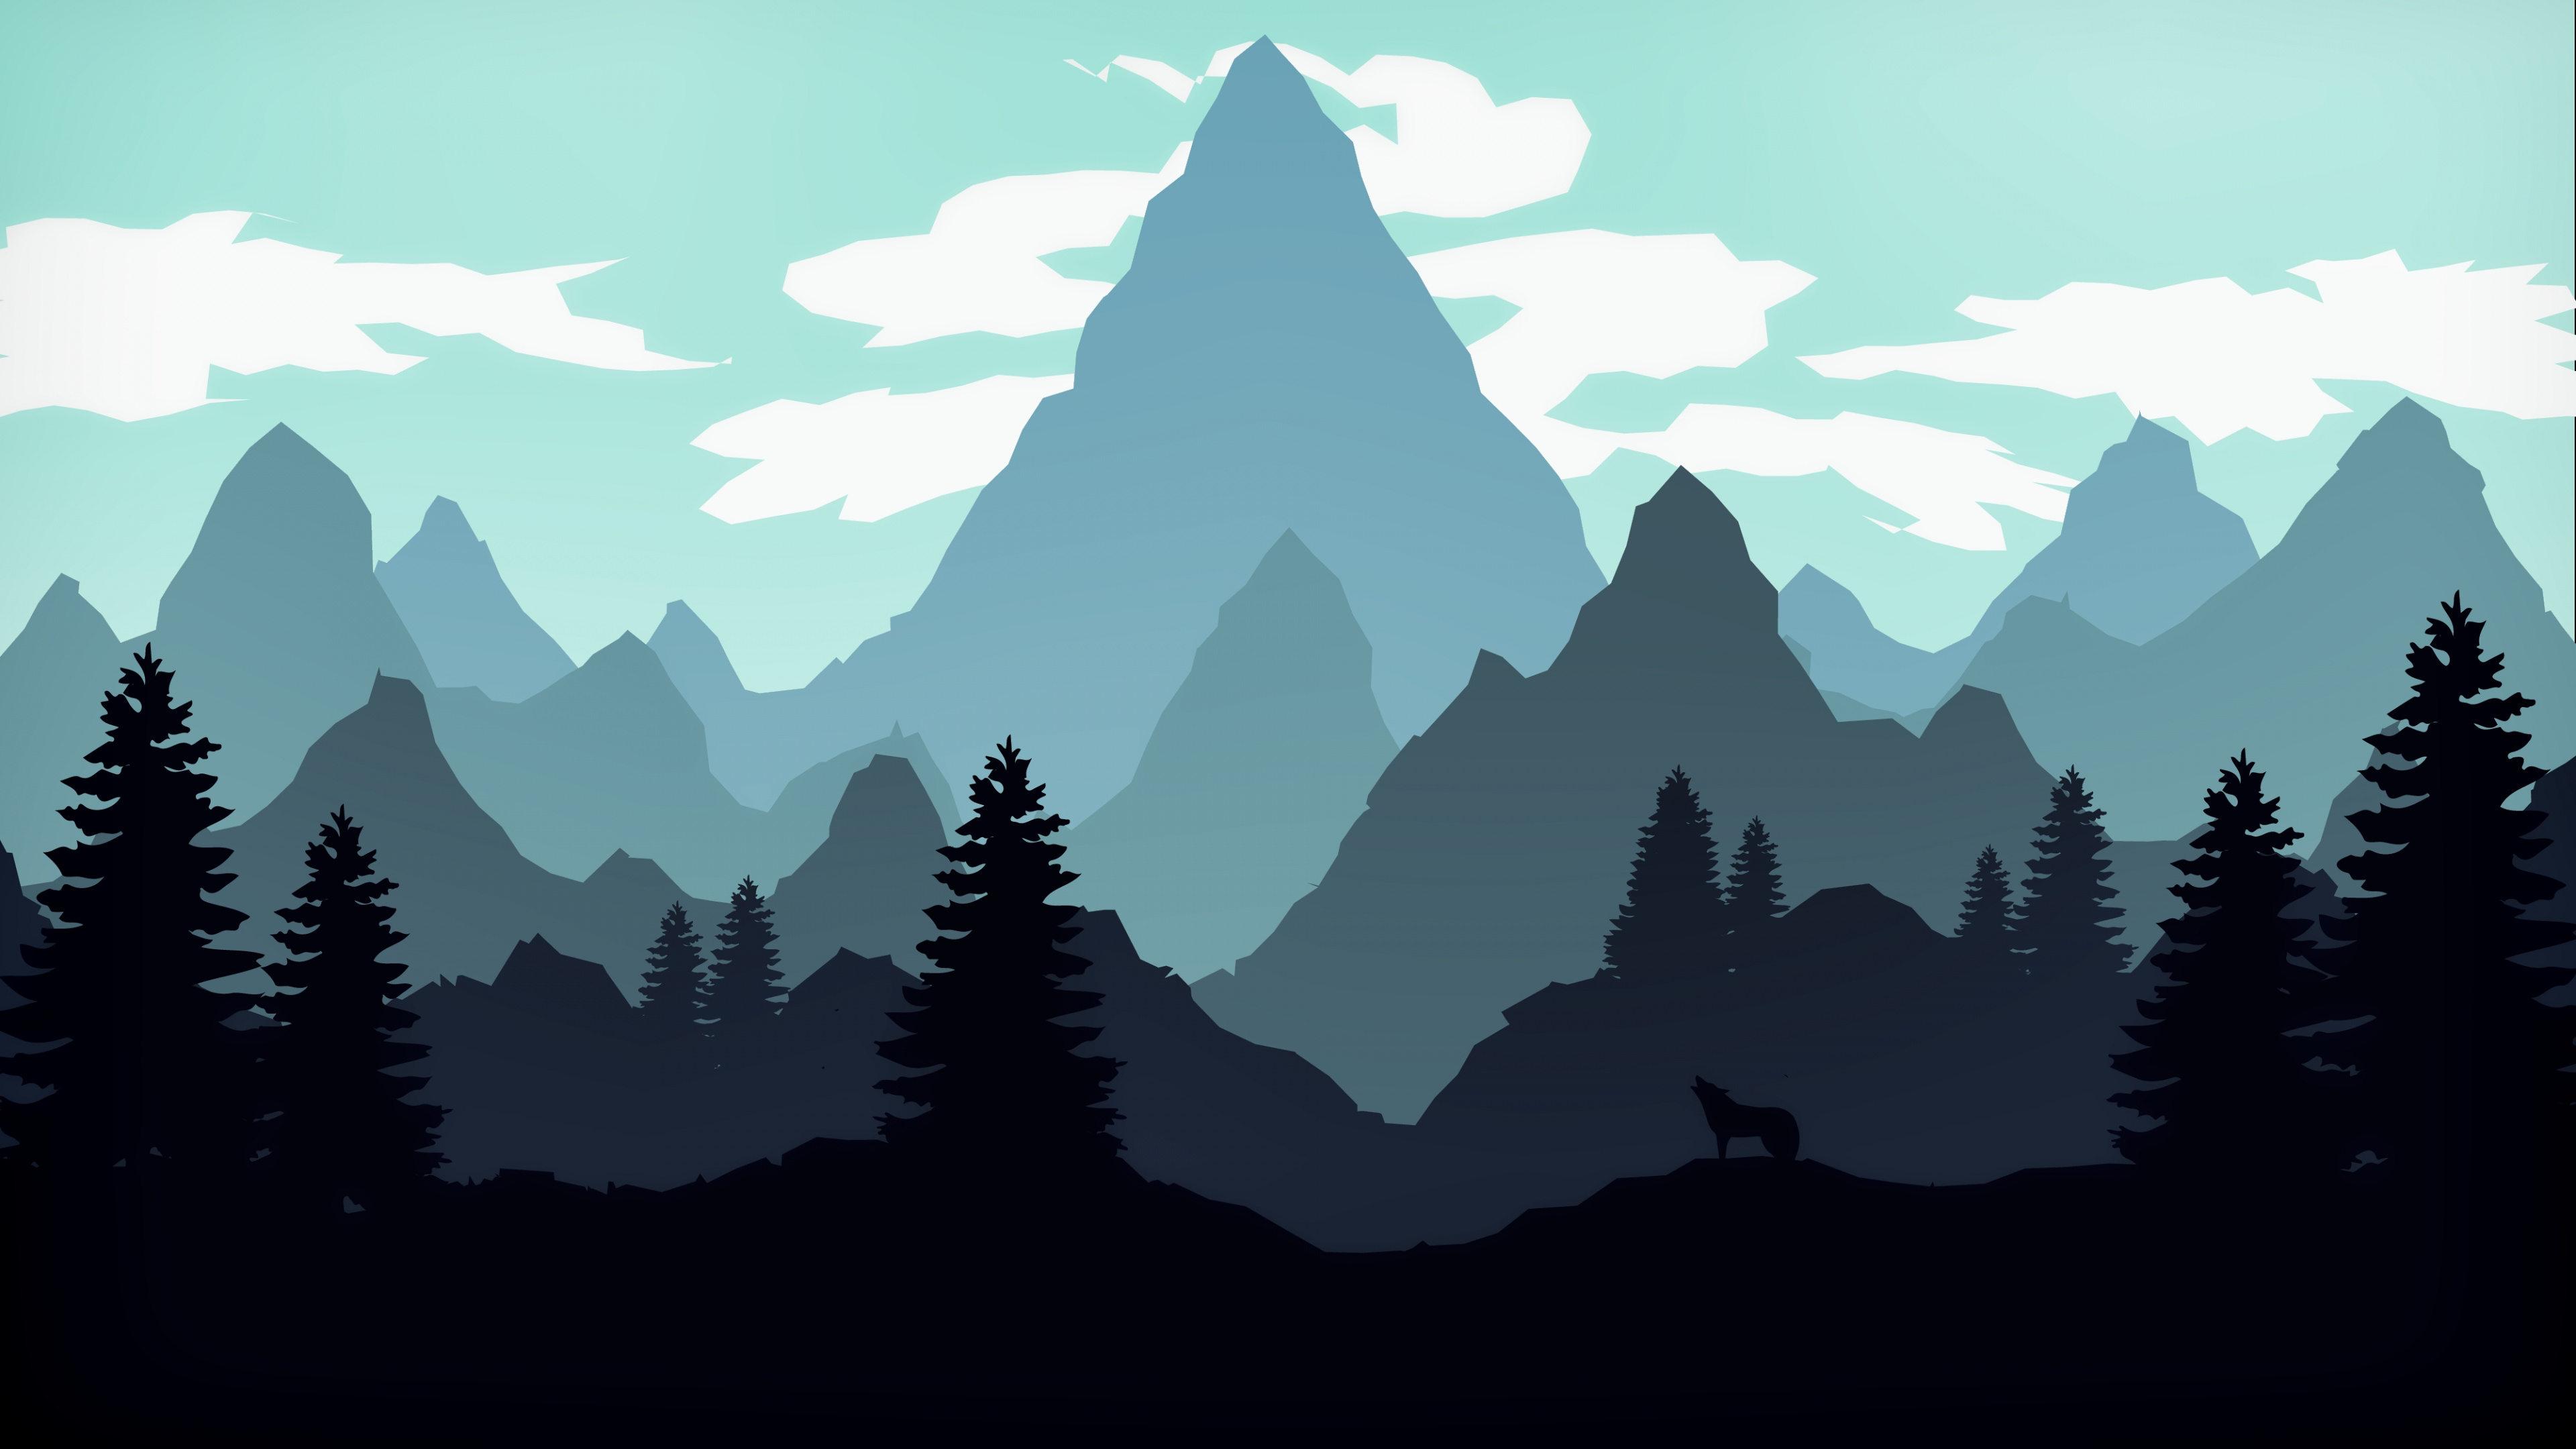 Download Silhouette, mountains, forest, digital art wallpaper, 3840x 4K UHD 16: Widescreen